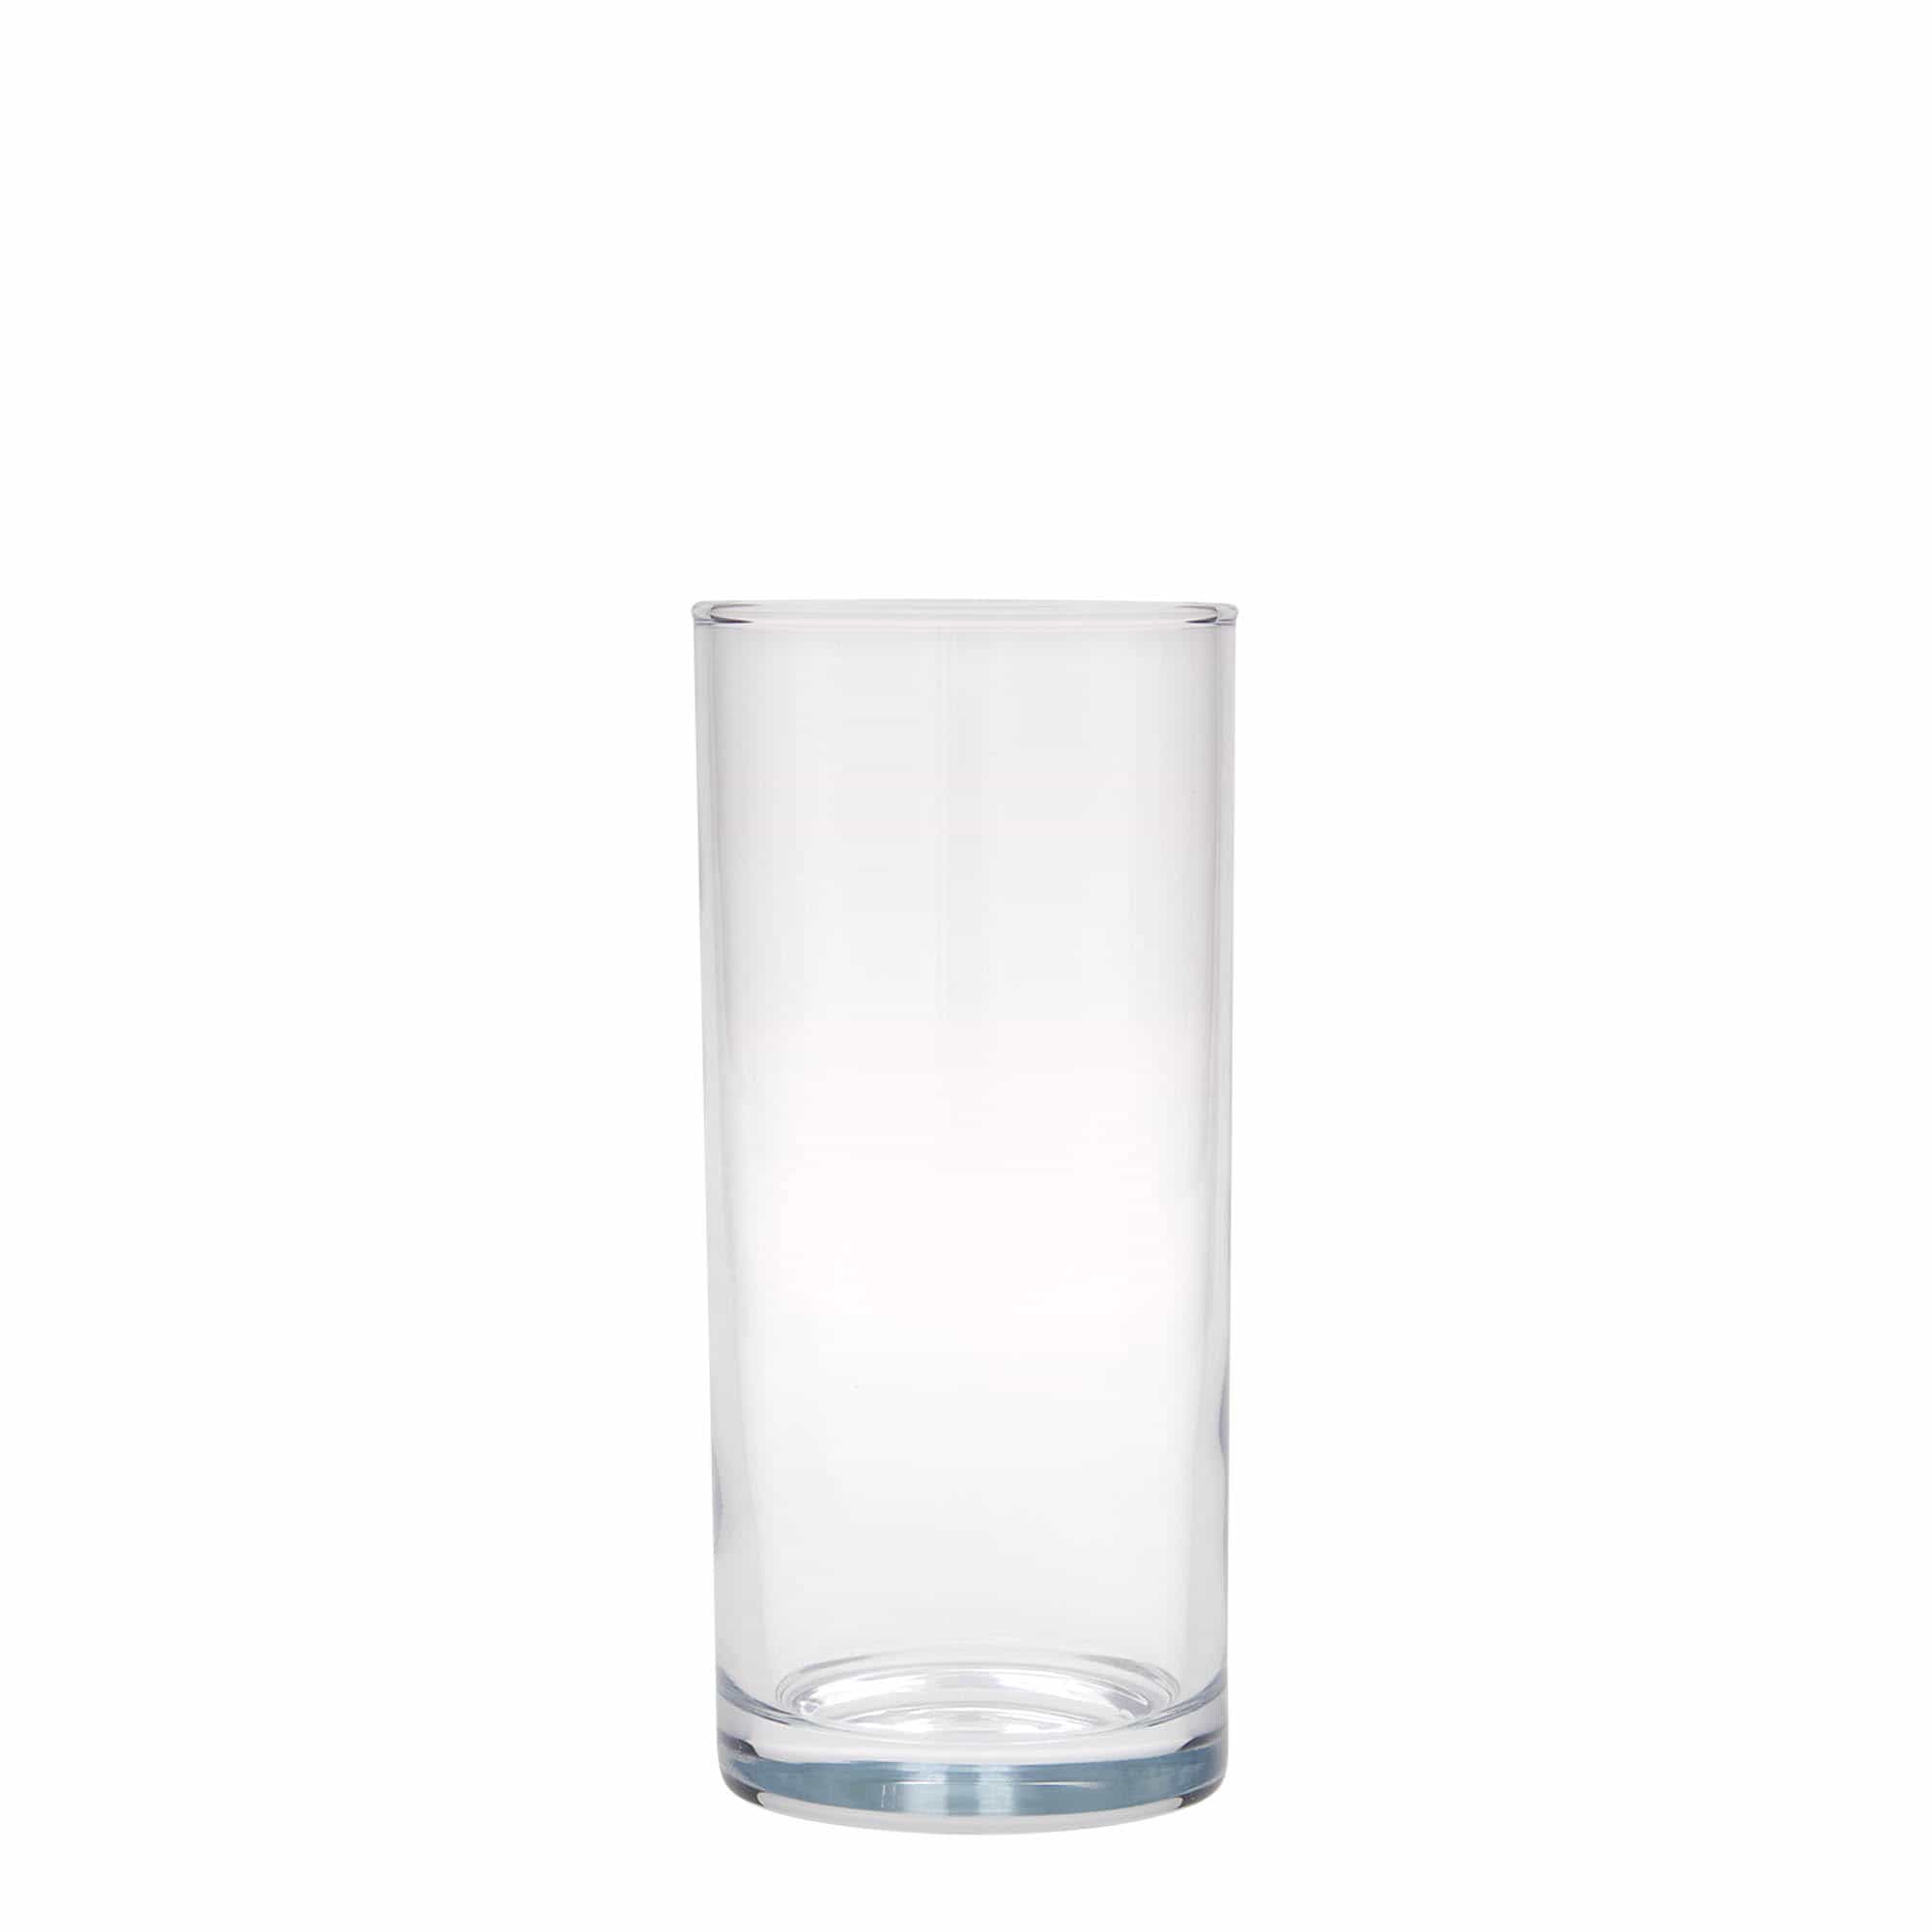 200 ml-es longdrinkes pohár 'Amsterdam', üveg